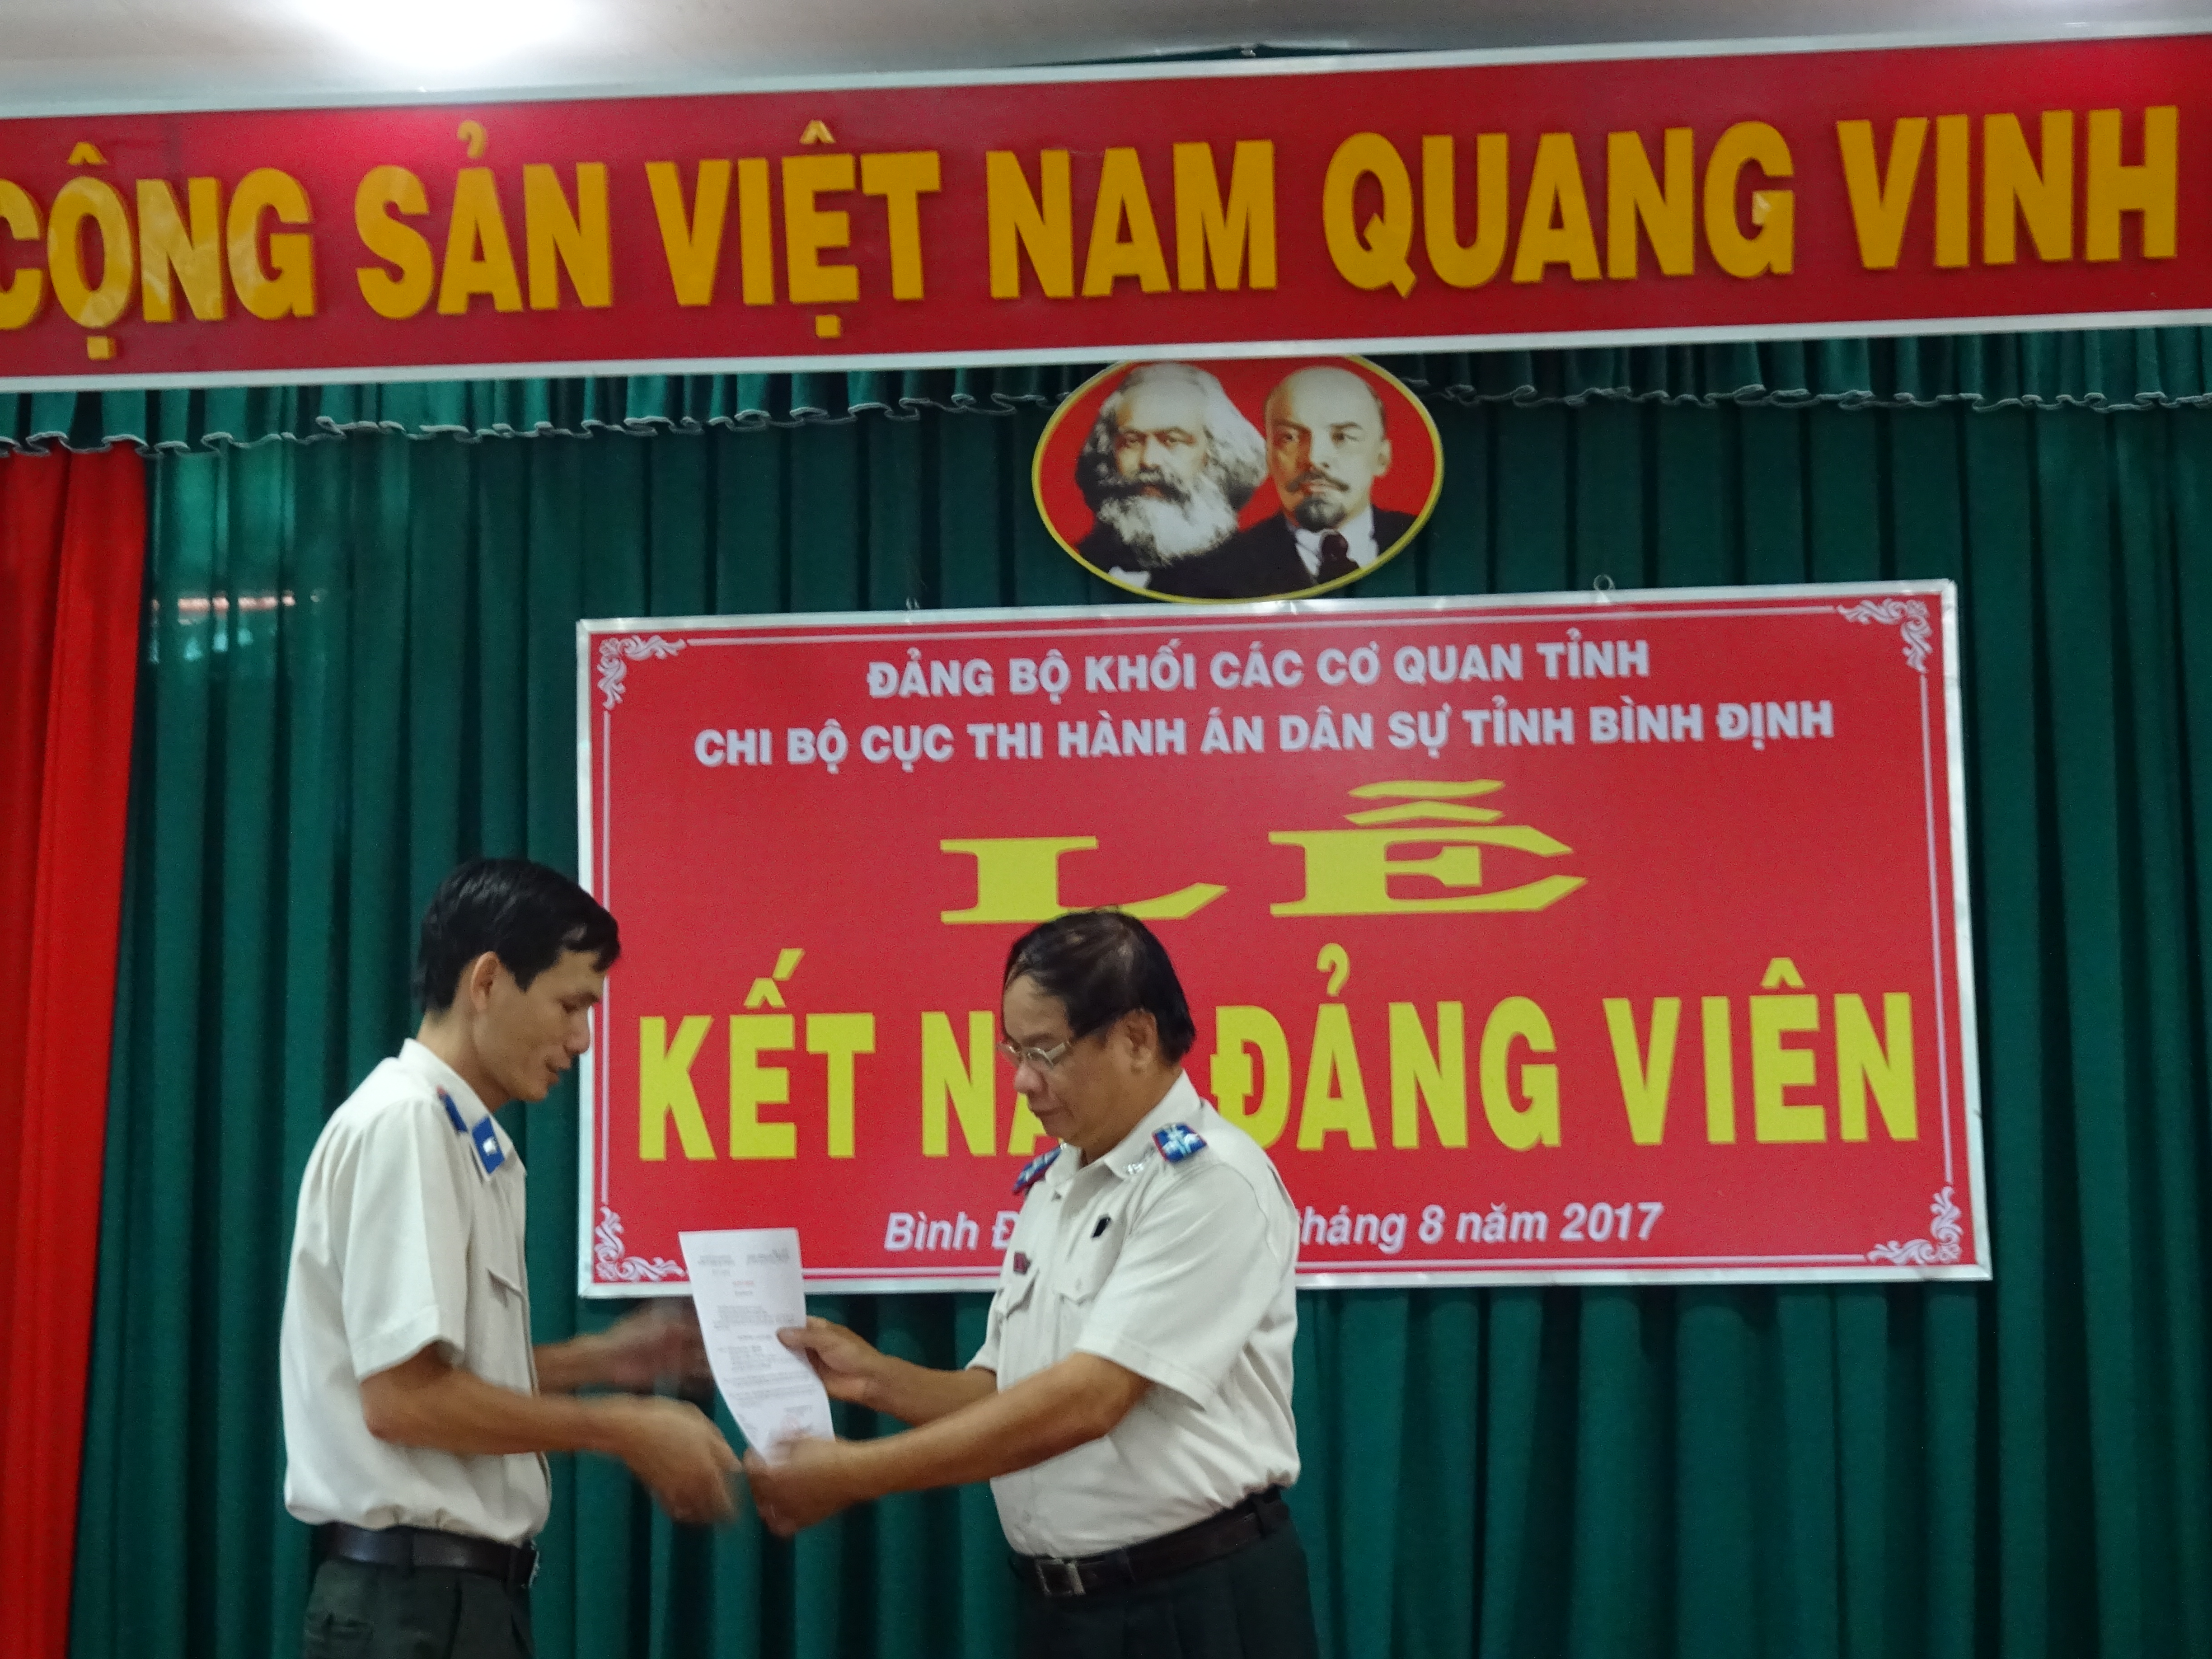 Chi bộ Cục Thi hành án dân sự tỉnh Bình Định tổ chức Lễ kết nạp đảng viên mới và trao Quyết định công nhận đảng viên chính thức.